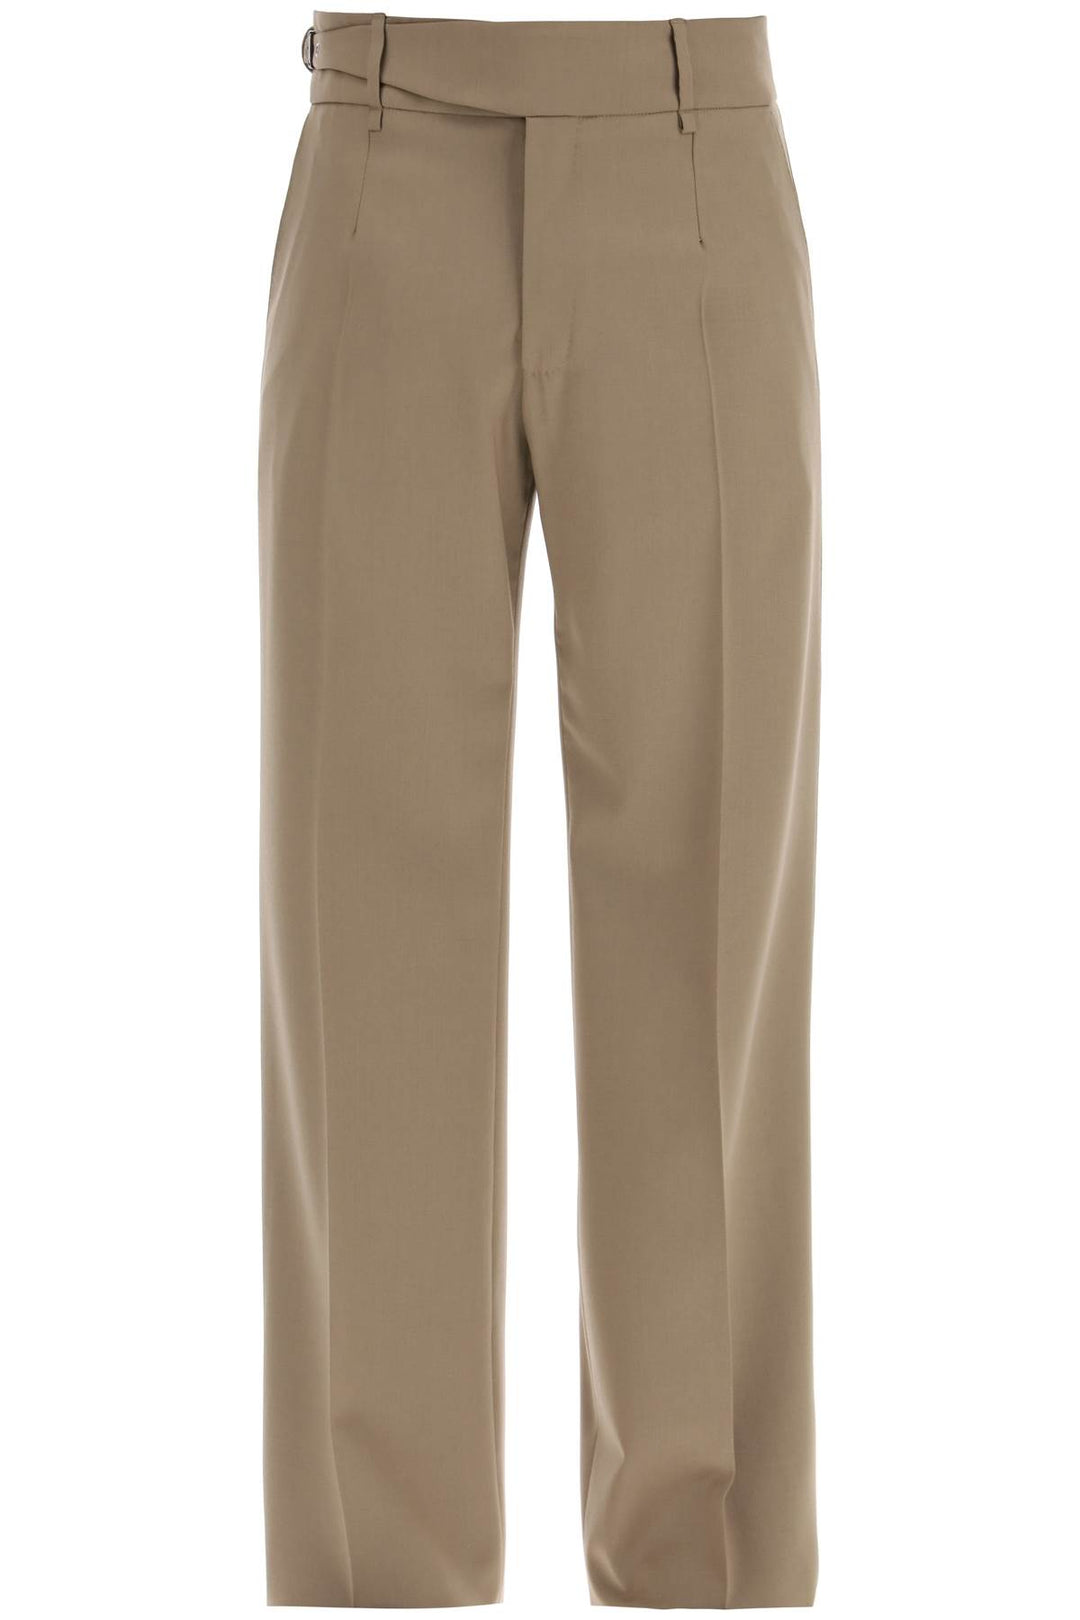 Dolce & gabbana tailored stretch trousers in bi-st-0